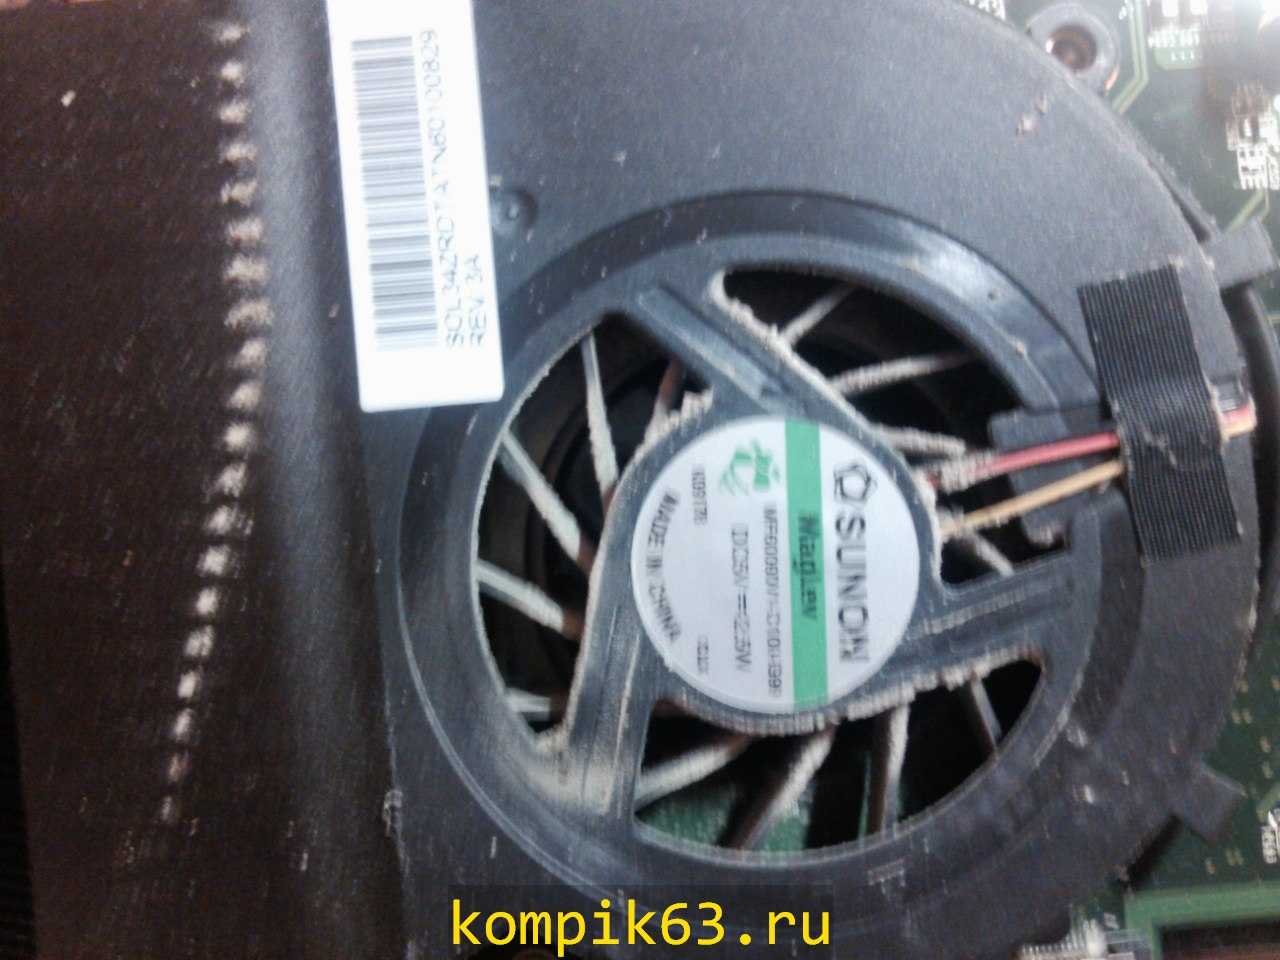 kompik63.ru-148